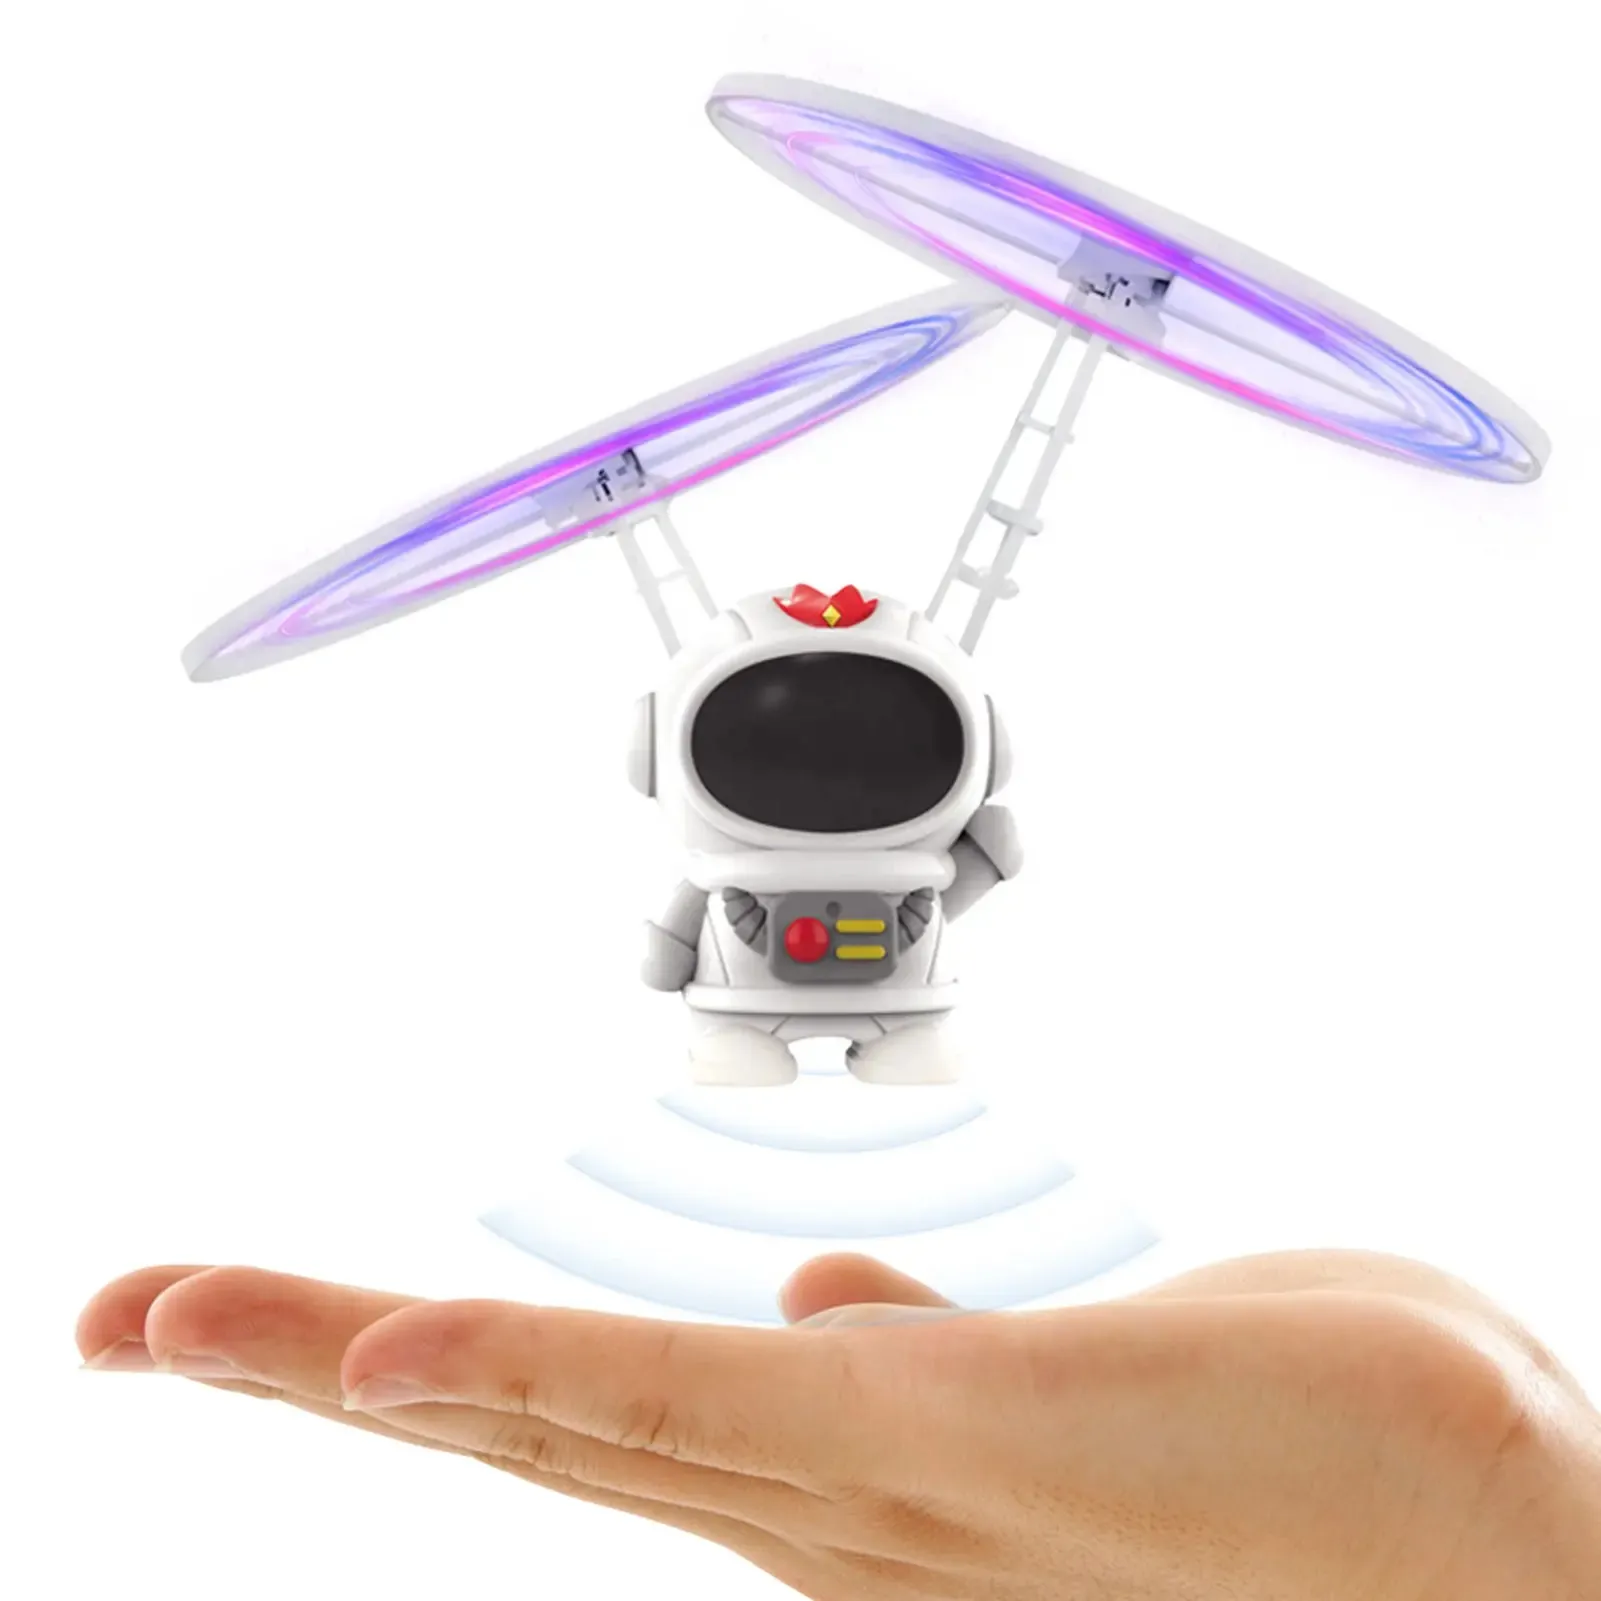 Mainan terbang baru mainan Robot astronot terbang, mainan Robot suspensi induksi kontrol tangan induksi anak Robot Terbang